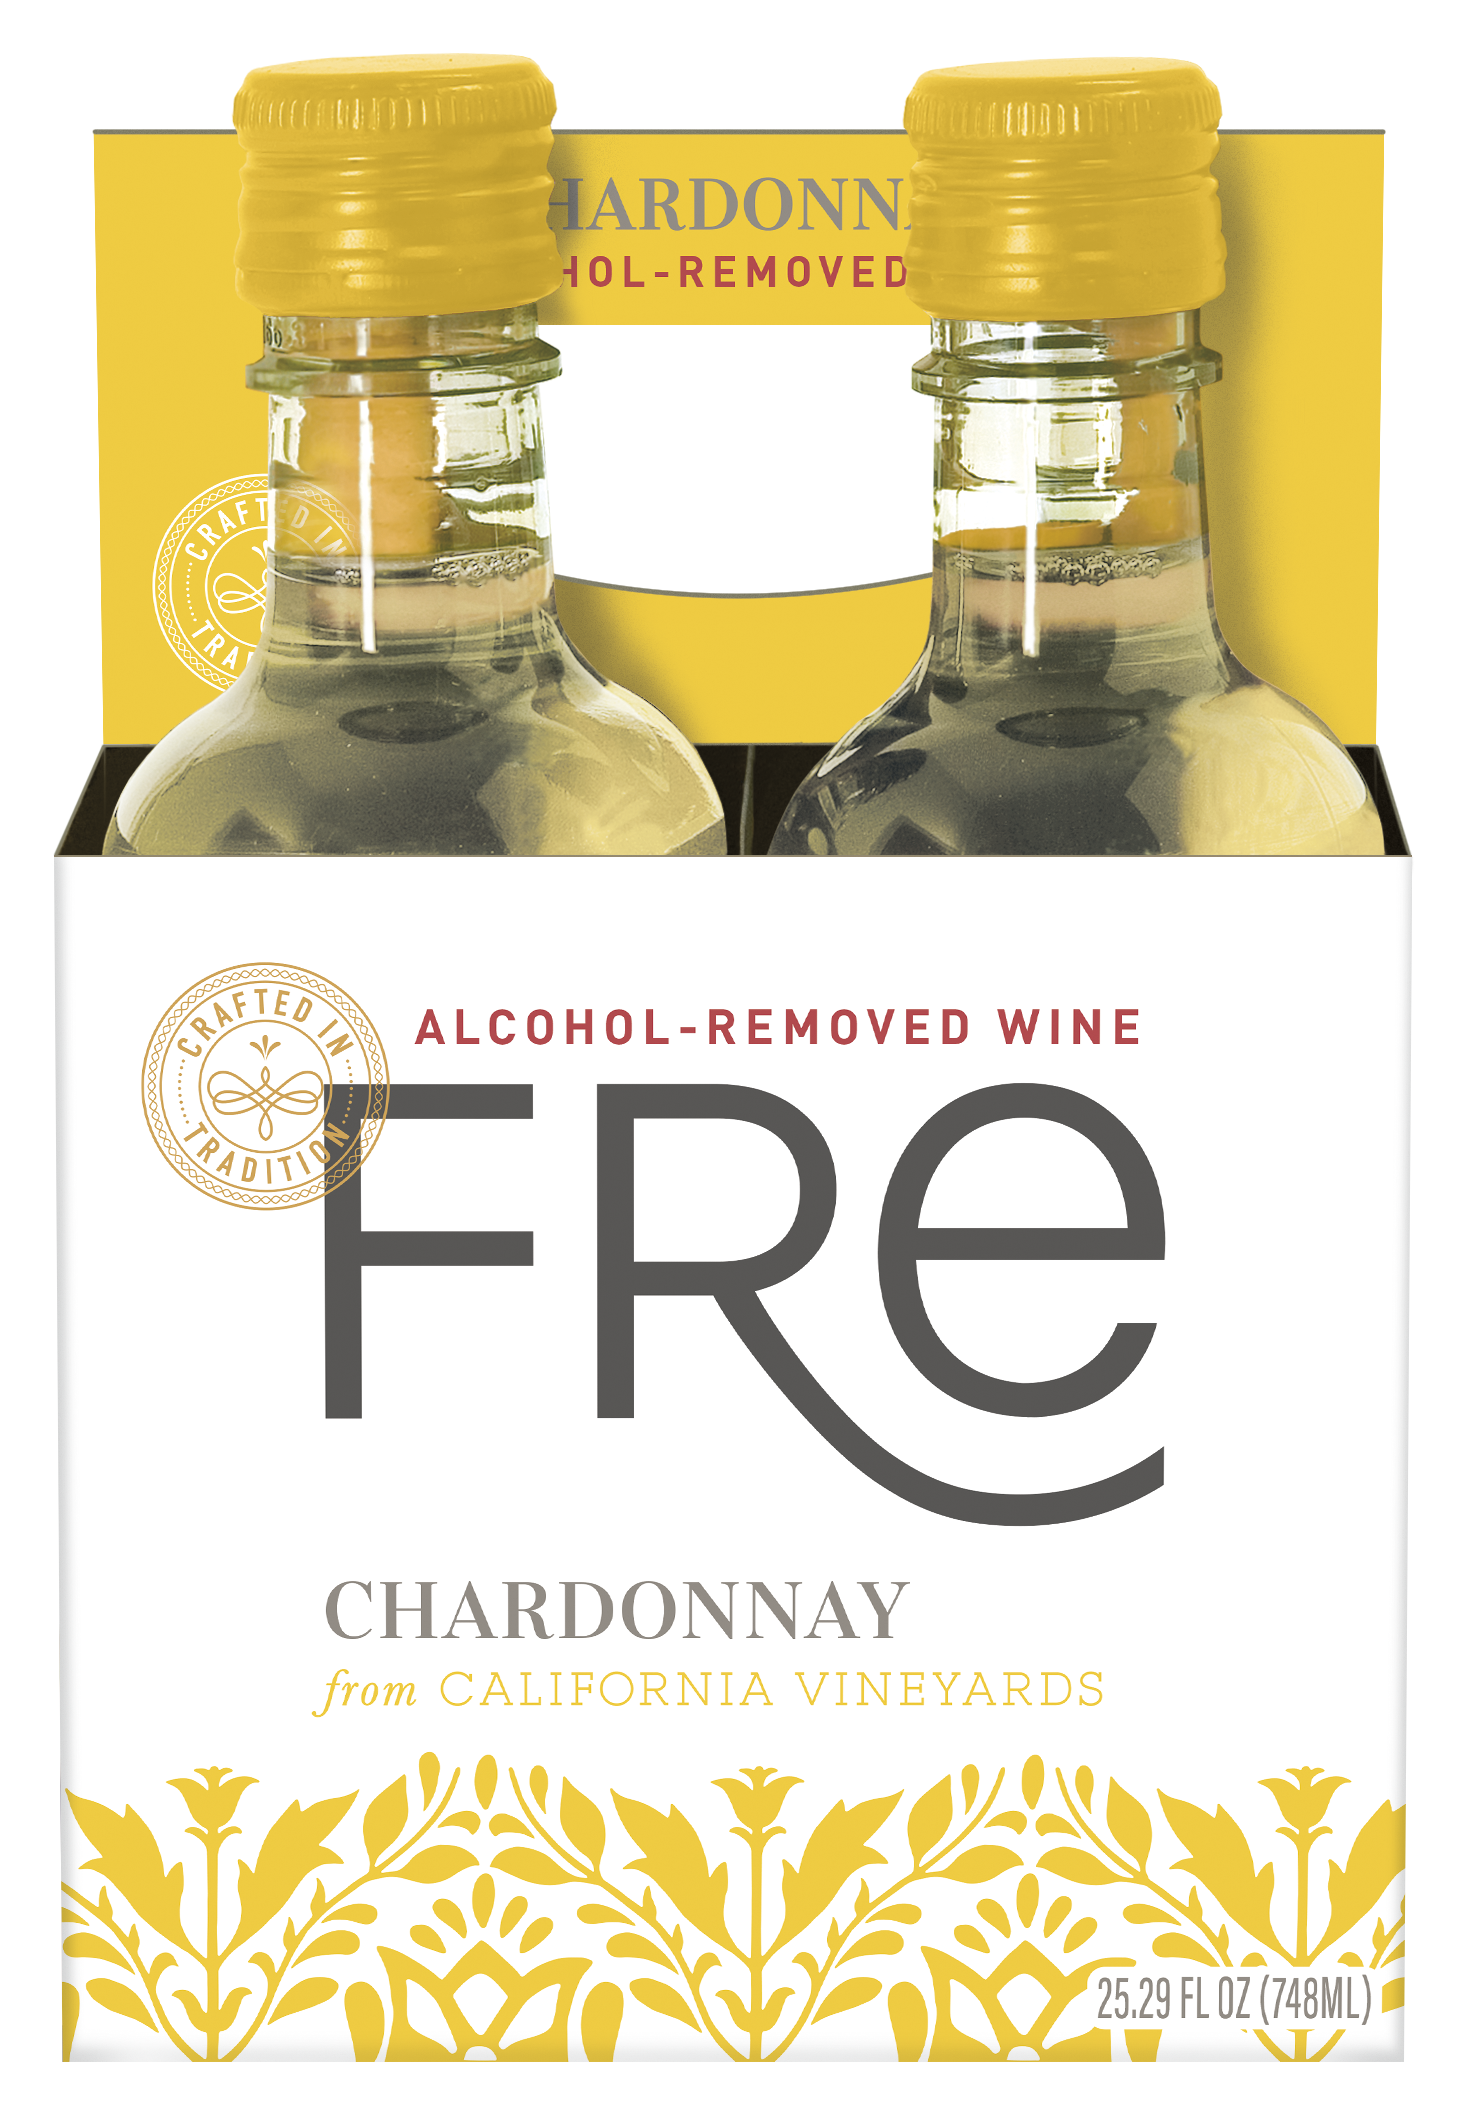 Four pack of 187ml Sutter Home Chardonnay Mini Bottles